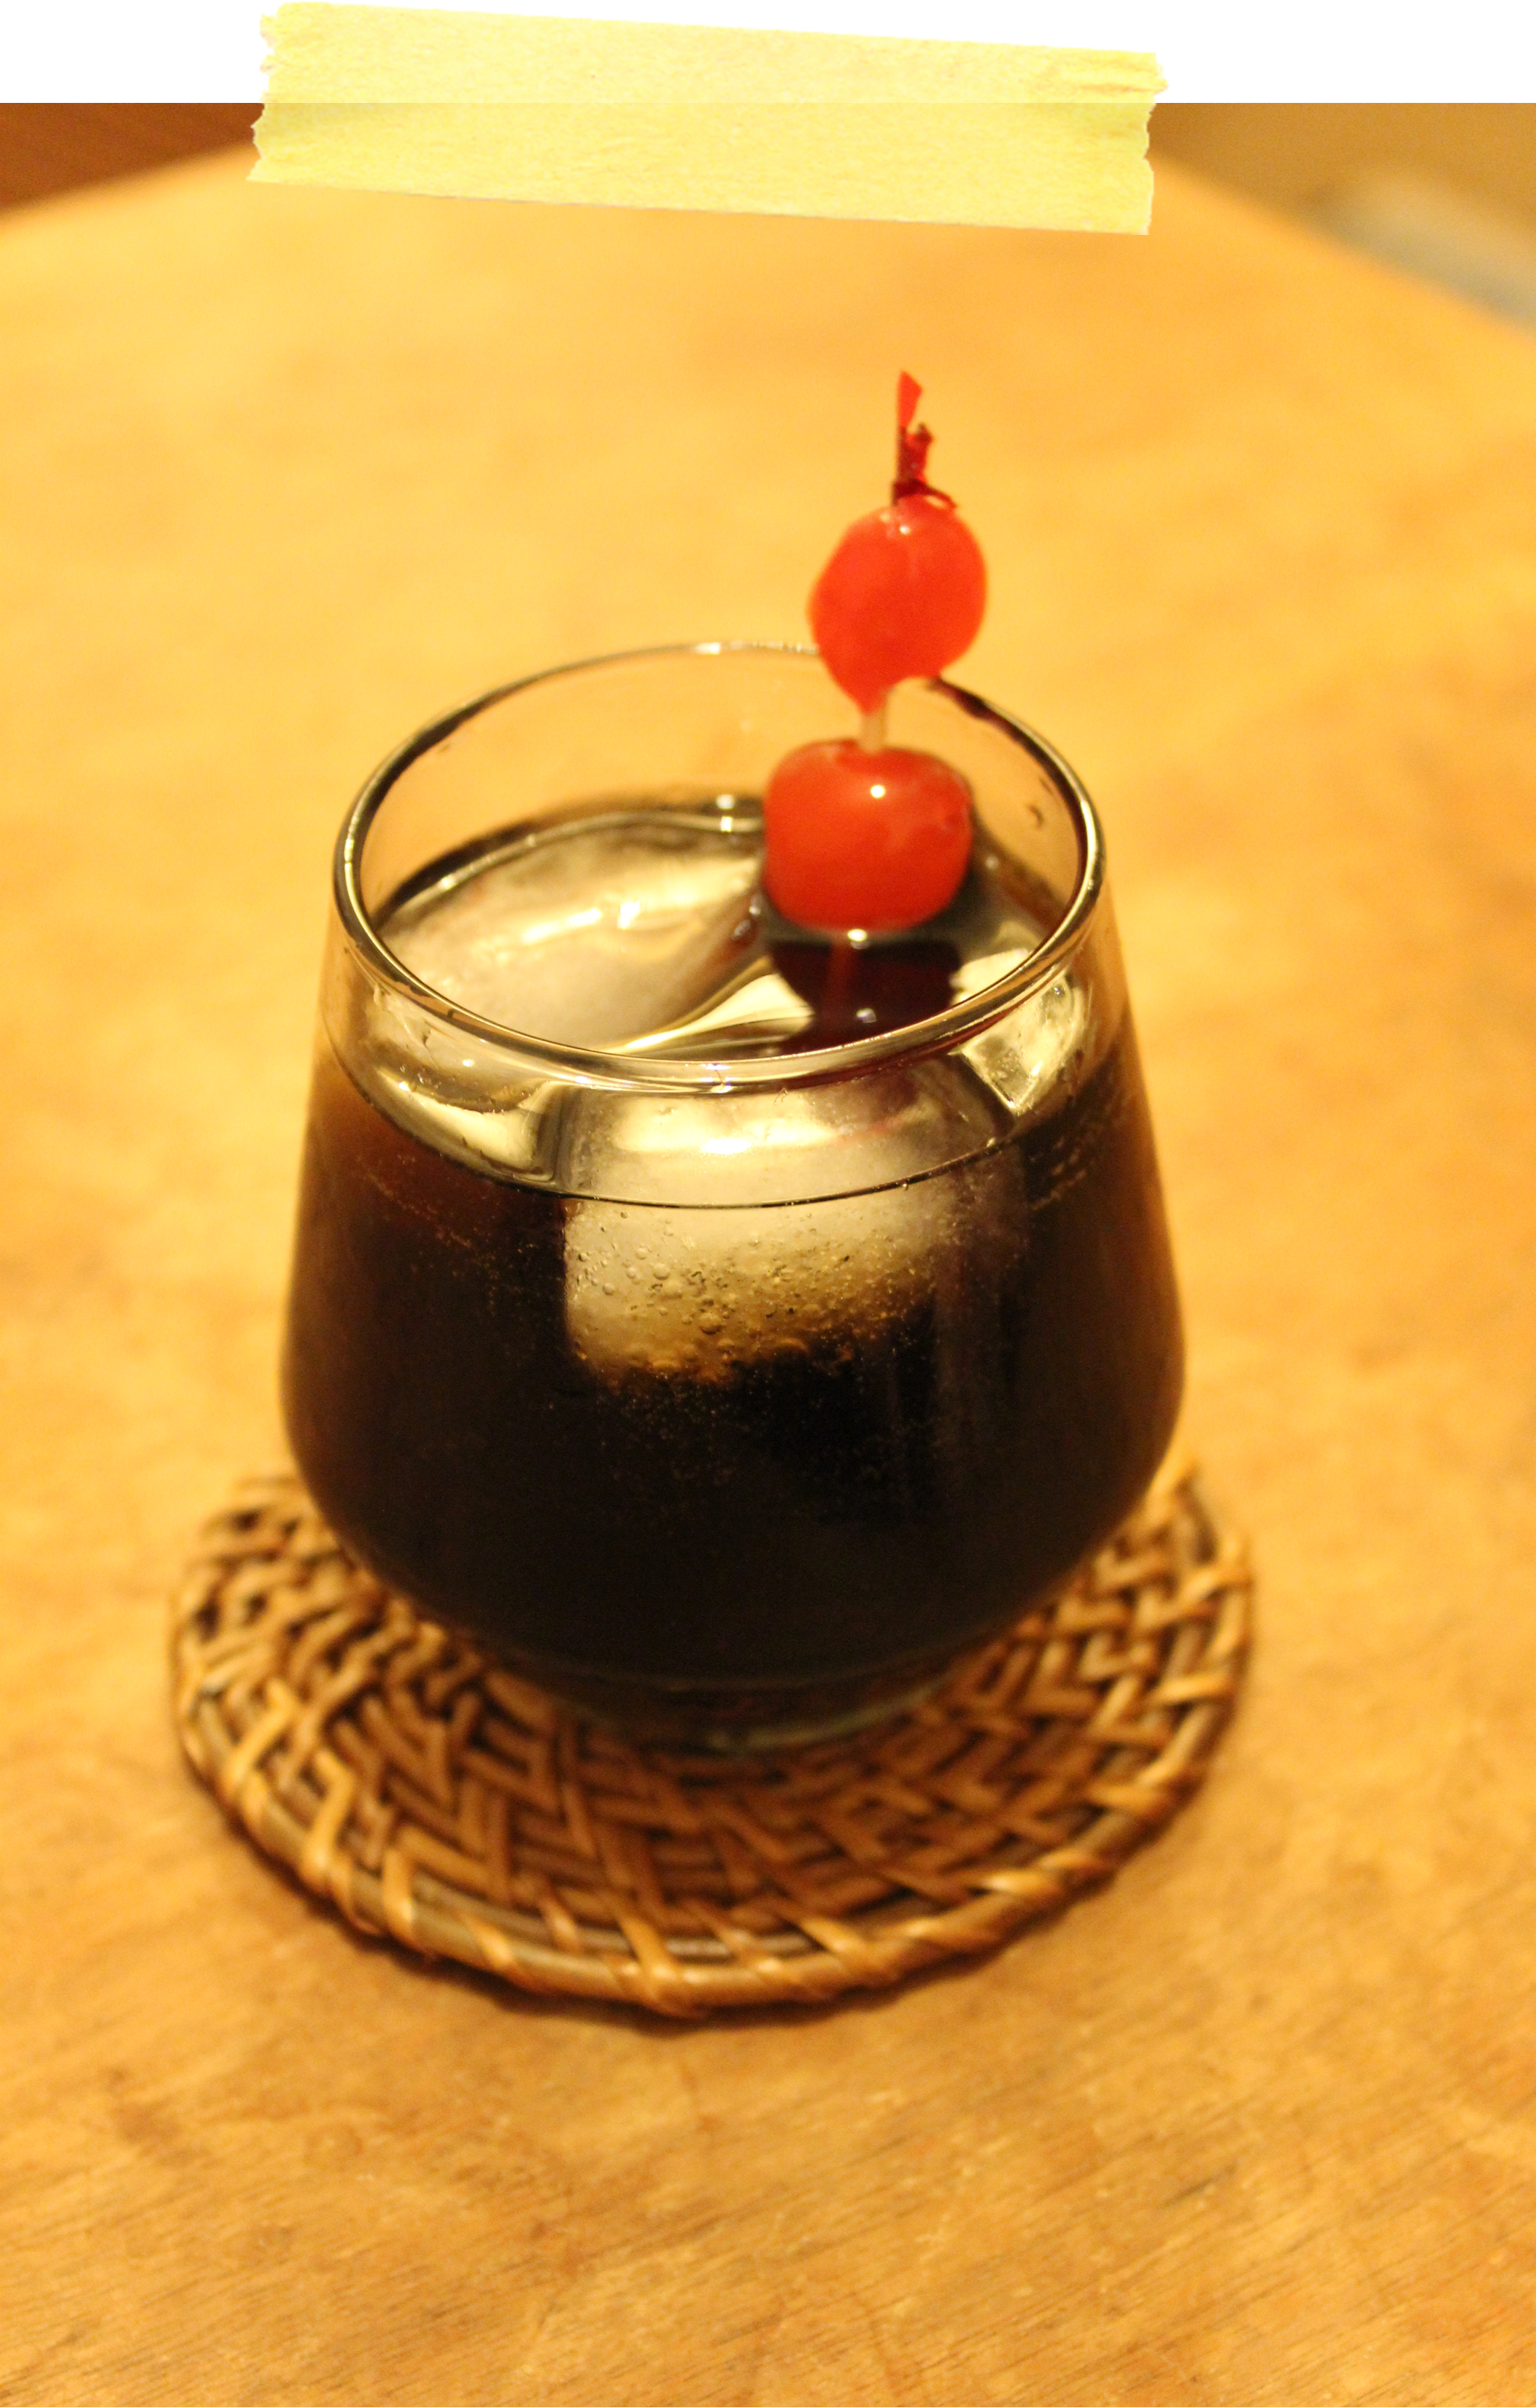 cherry amaretto and coke cocktail recipe